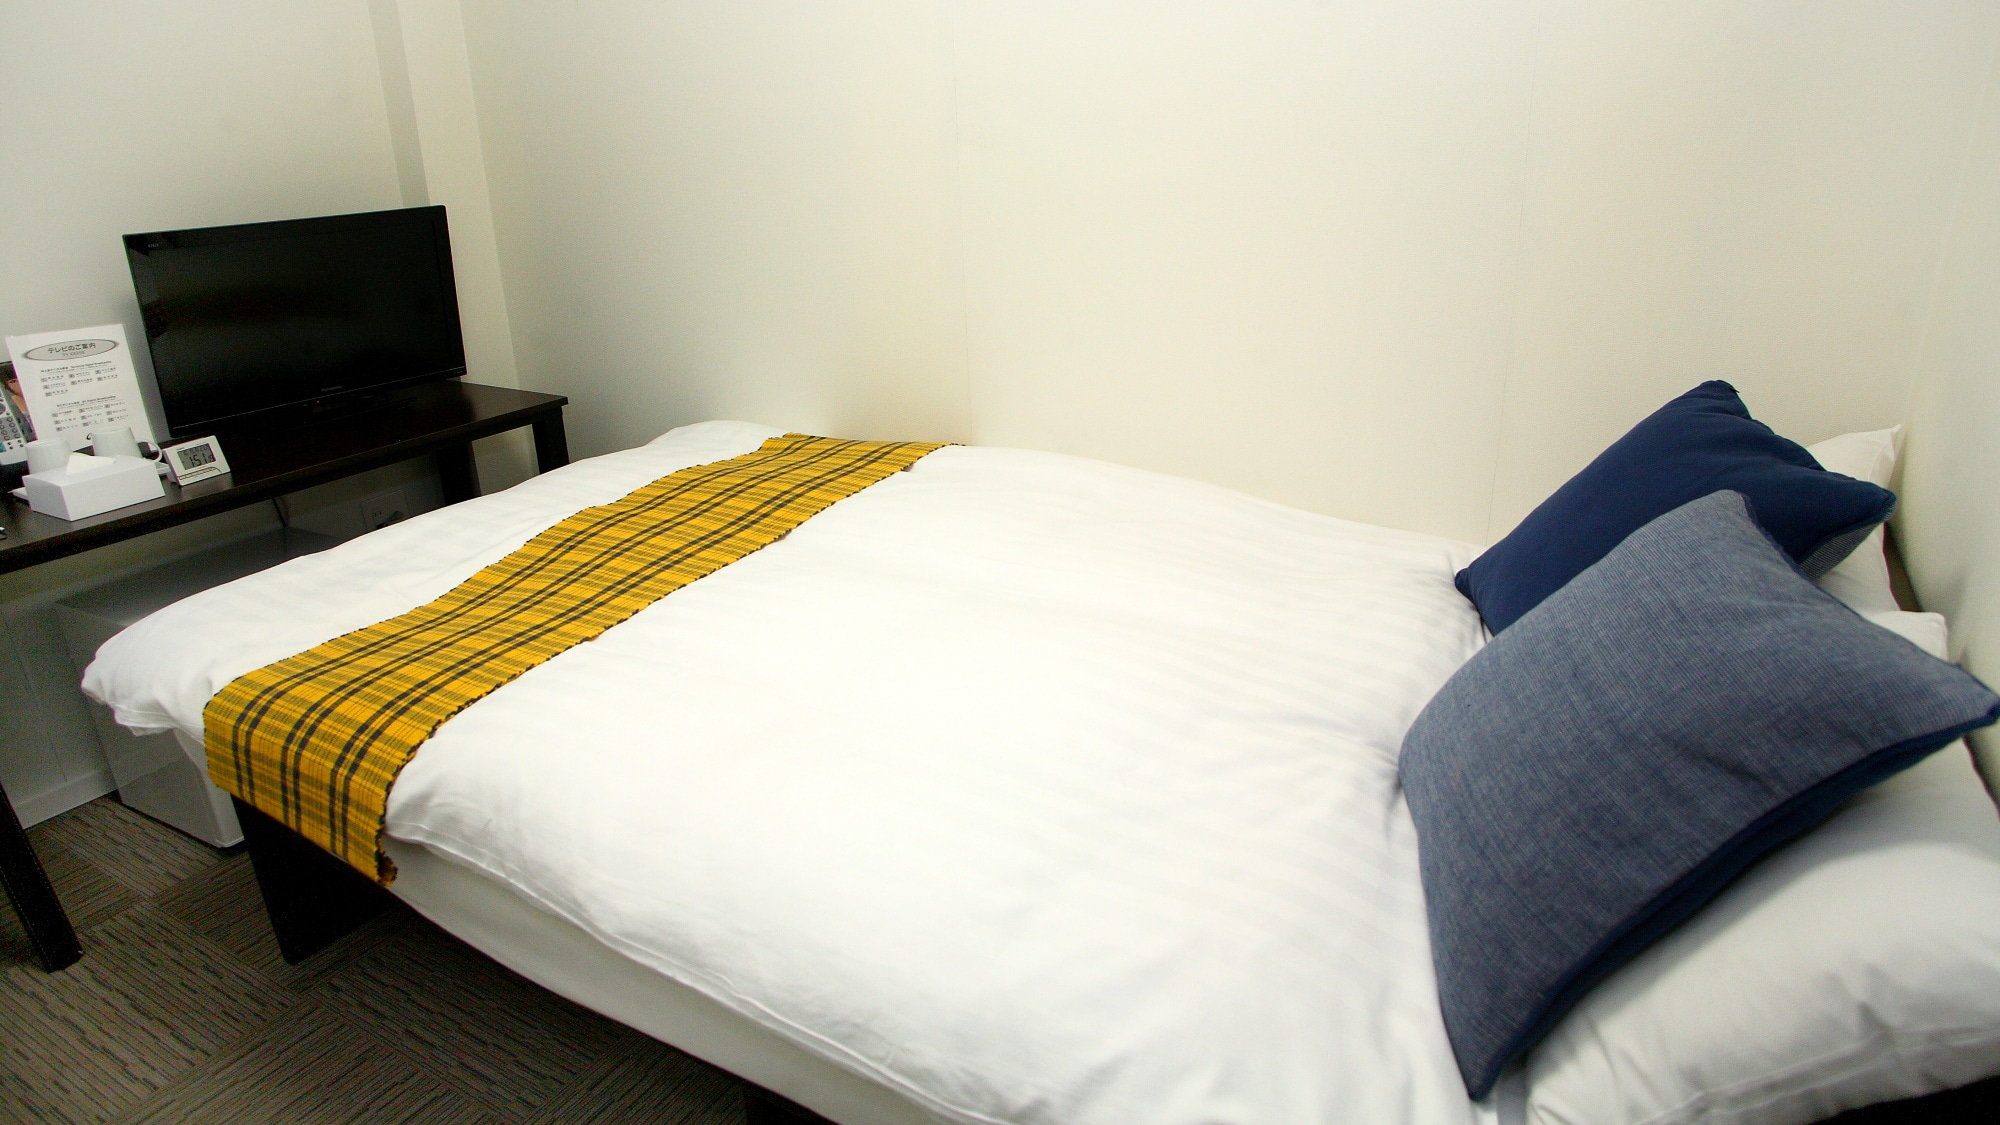 ห้องเซมิดับเบิล: 12 ตร.ม. เตียงกว้าง 120 ซม. เครื่องปรับอากาศส่วนตัว Wi-Fi